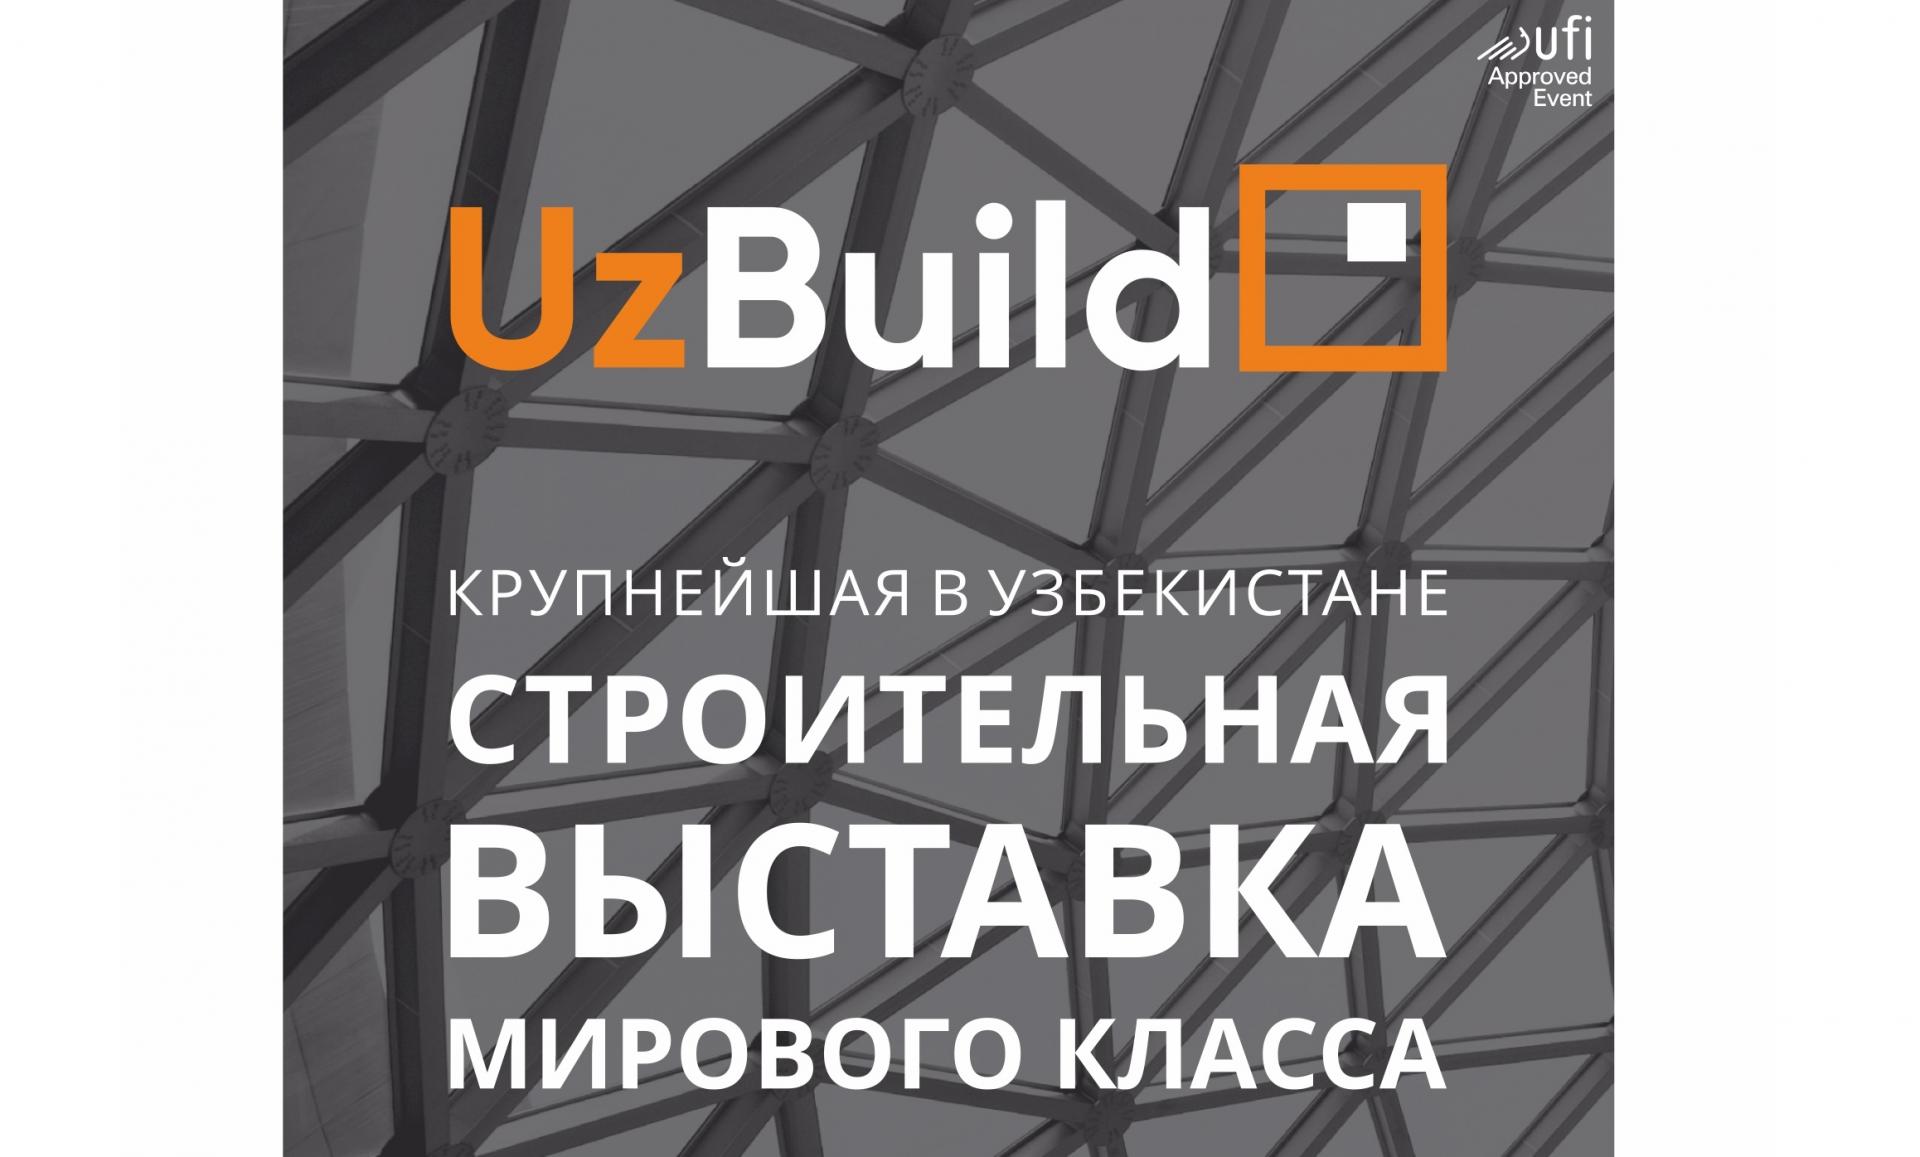 Выставка-флагман строительной индустрии Узбекистана – UzBuild пройдет на новой площадке!